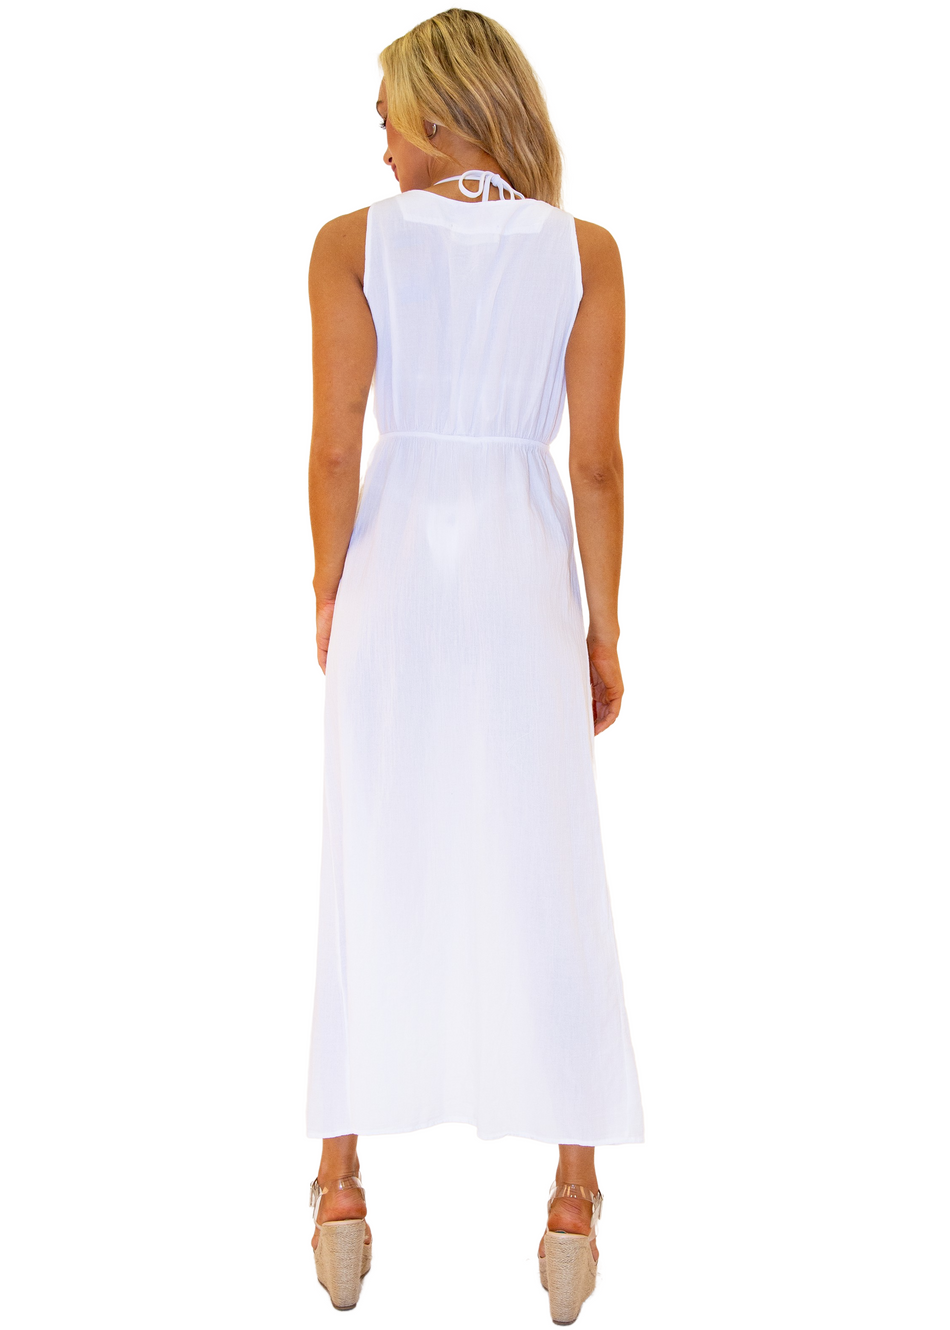 NW1362 - White Cotton Dress